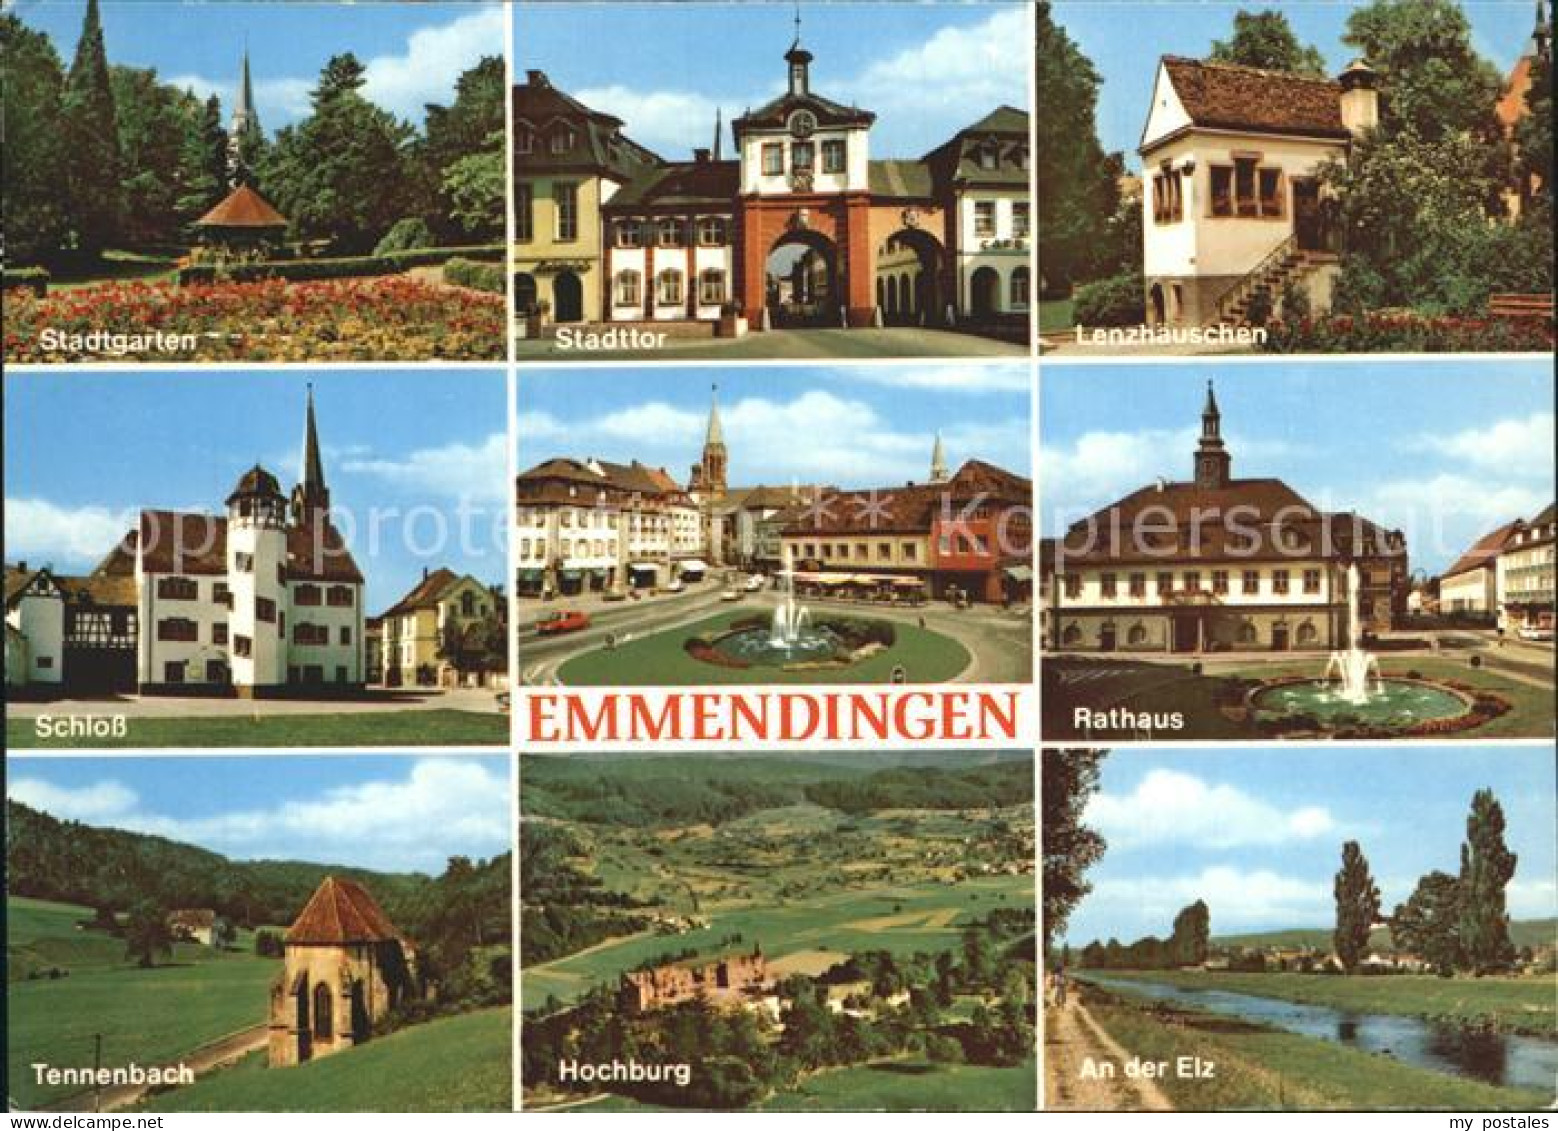 72283515 Emmendingen Stadttor Rathaus Hochburg Schloss  Emmendingen - Emmendingen